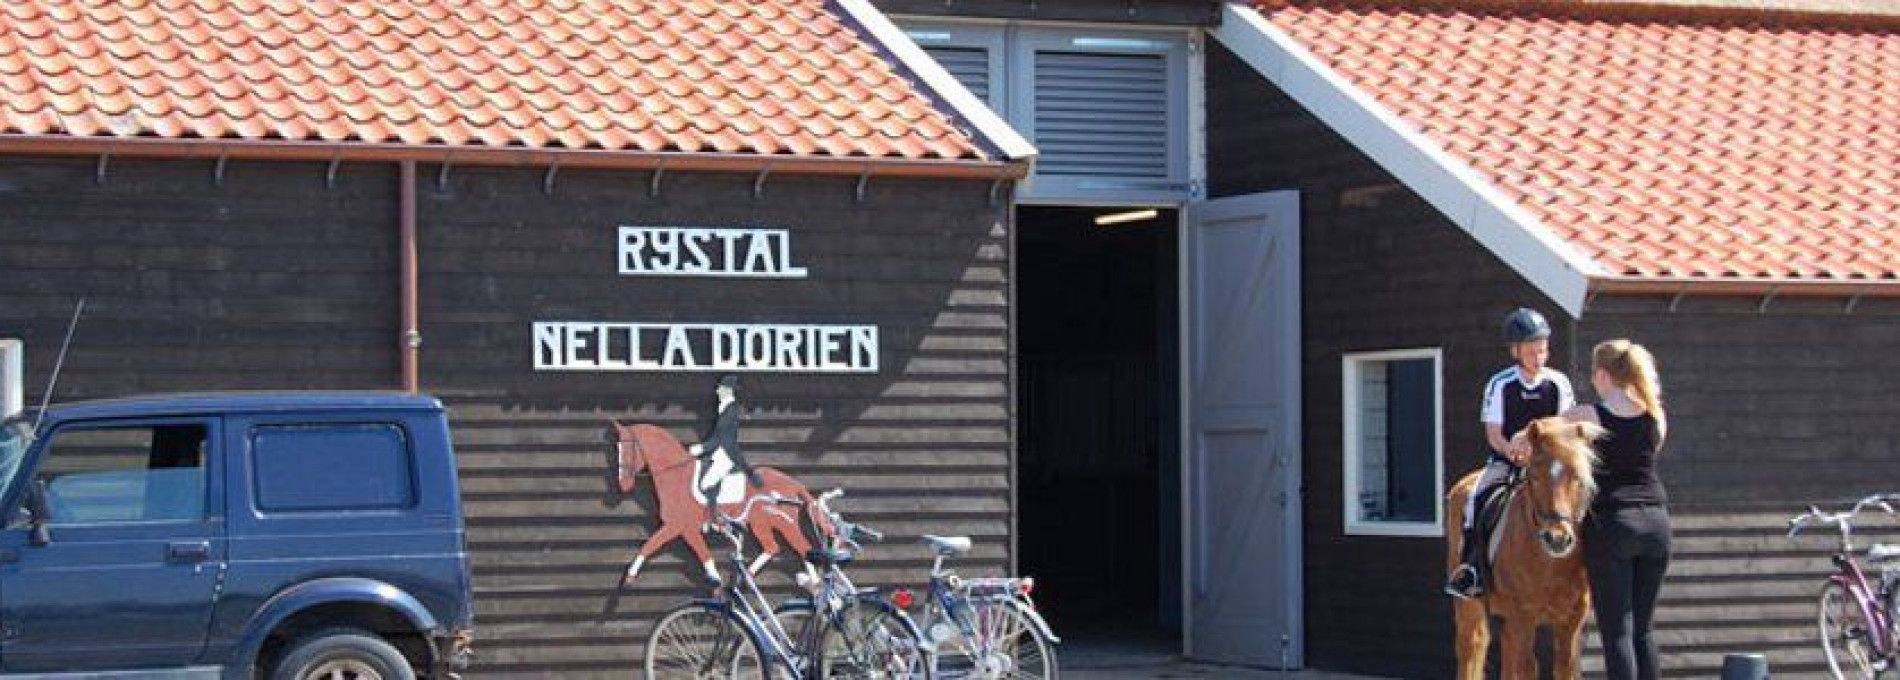 Reitstall Nella Dorien - VVV Ameland